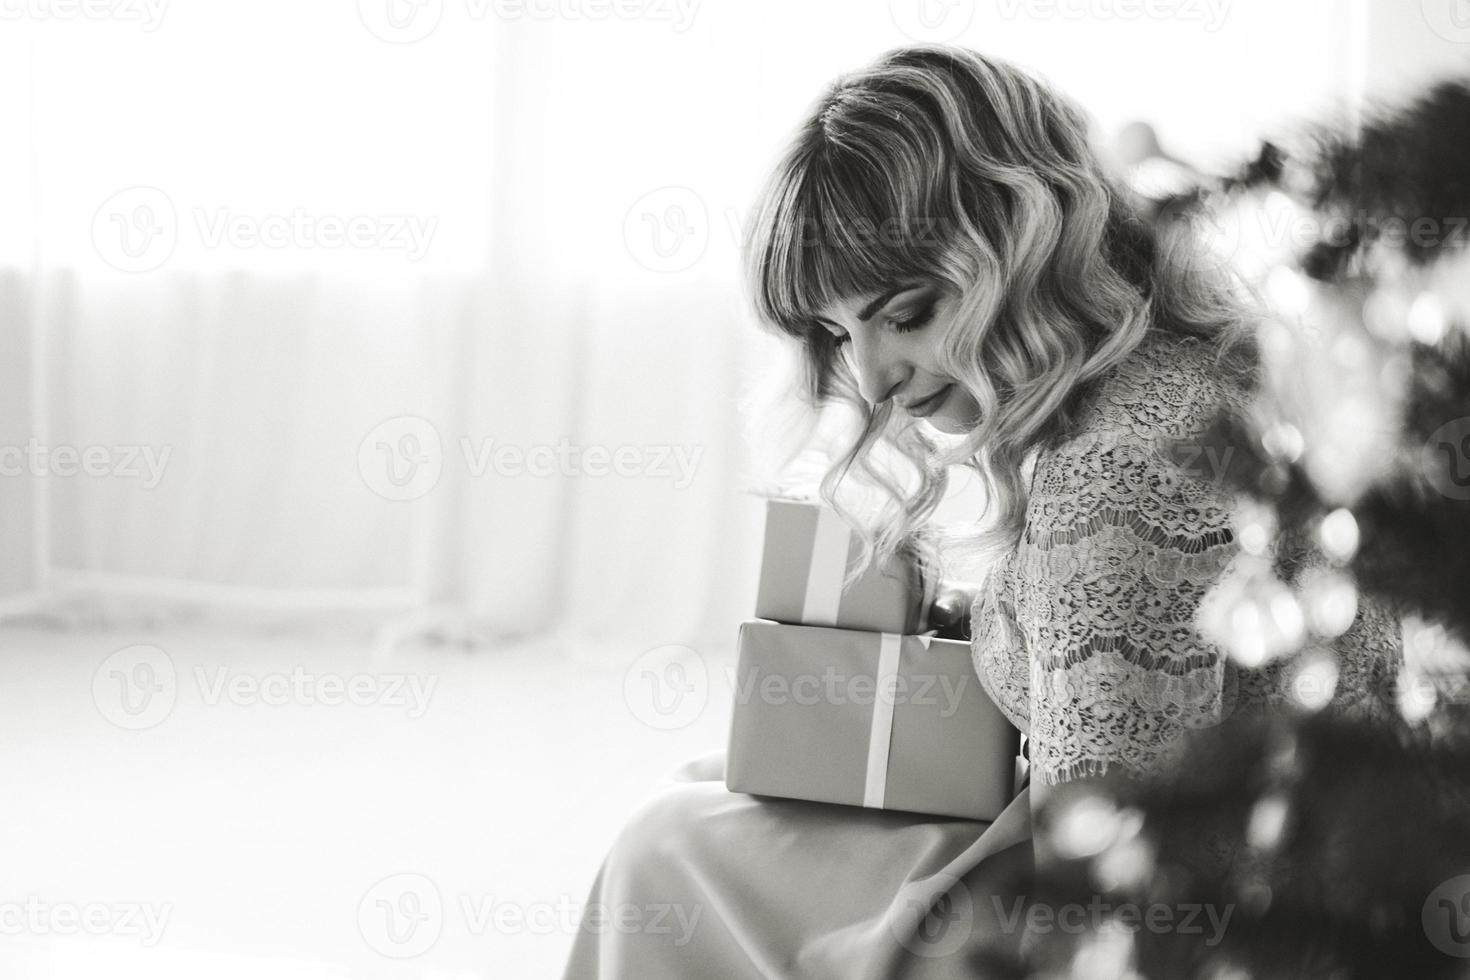 Encantadora mujer joven con estilo elegante en blanco y negro foto